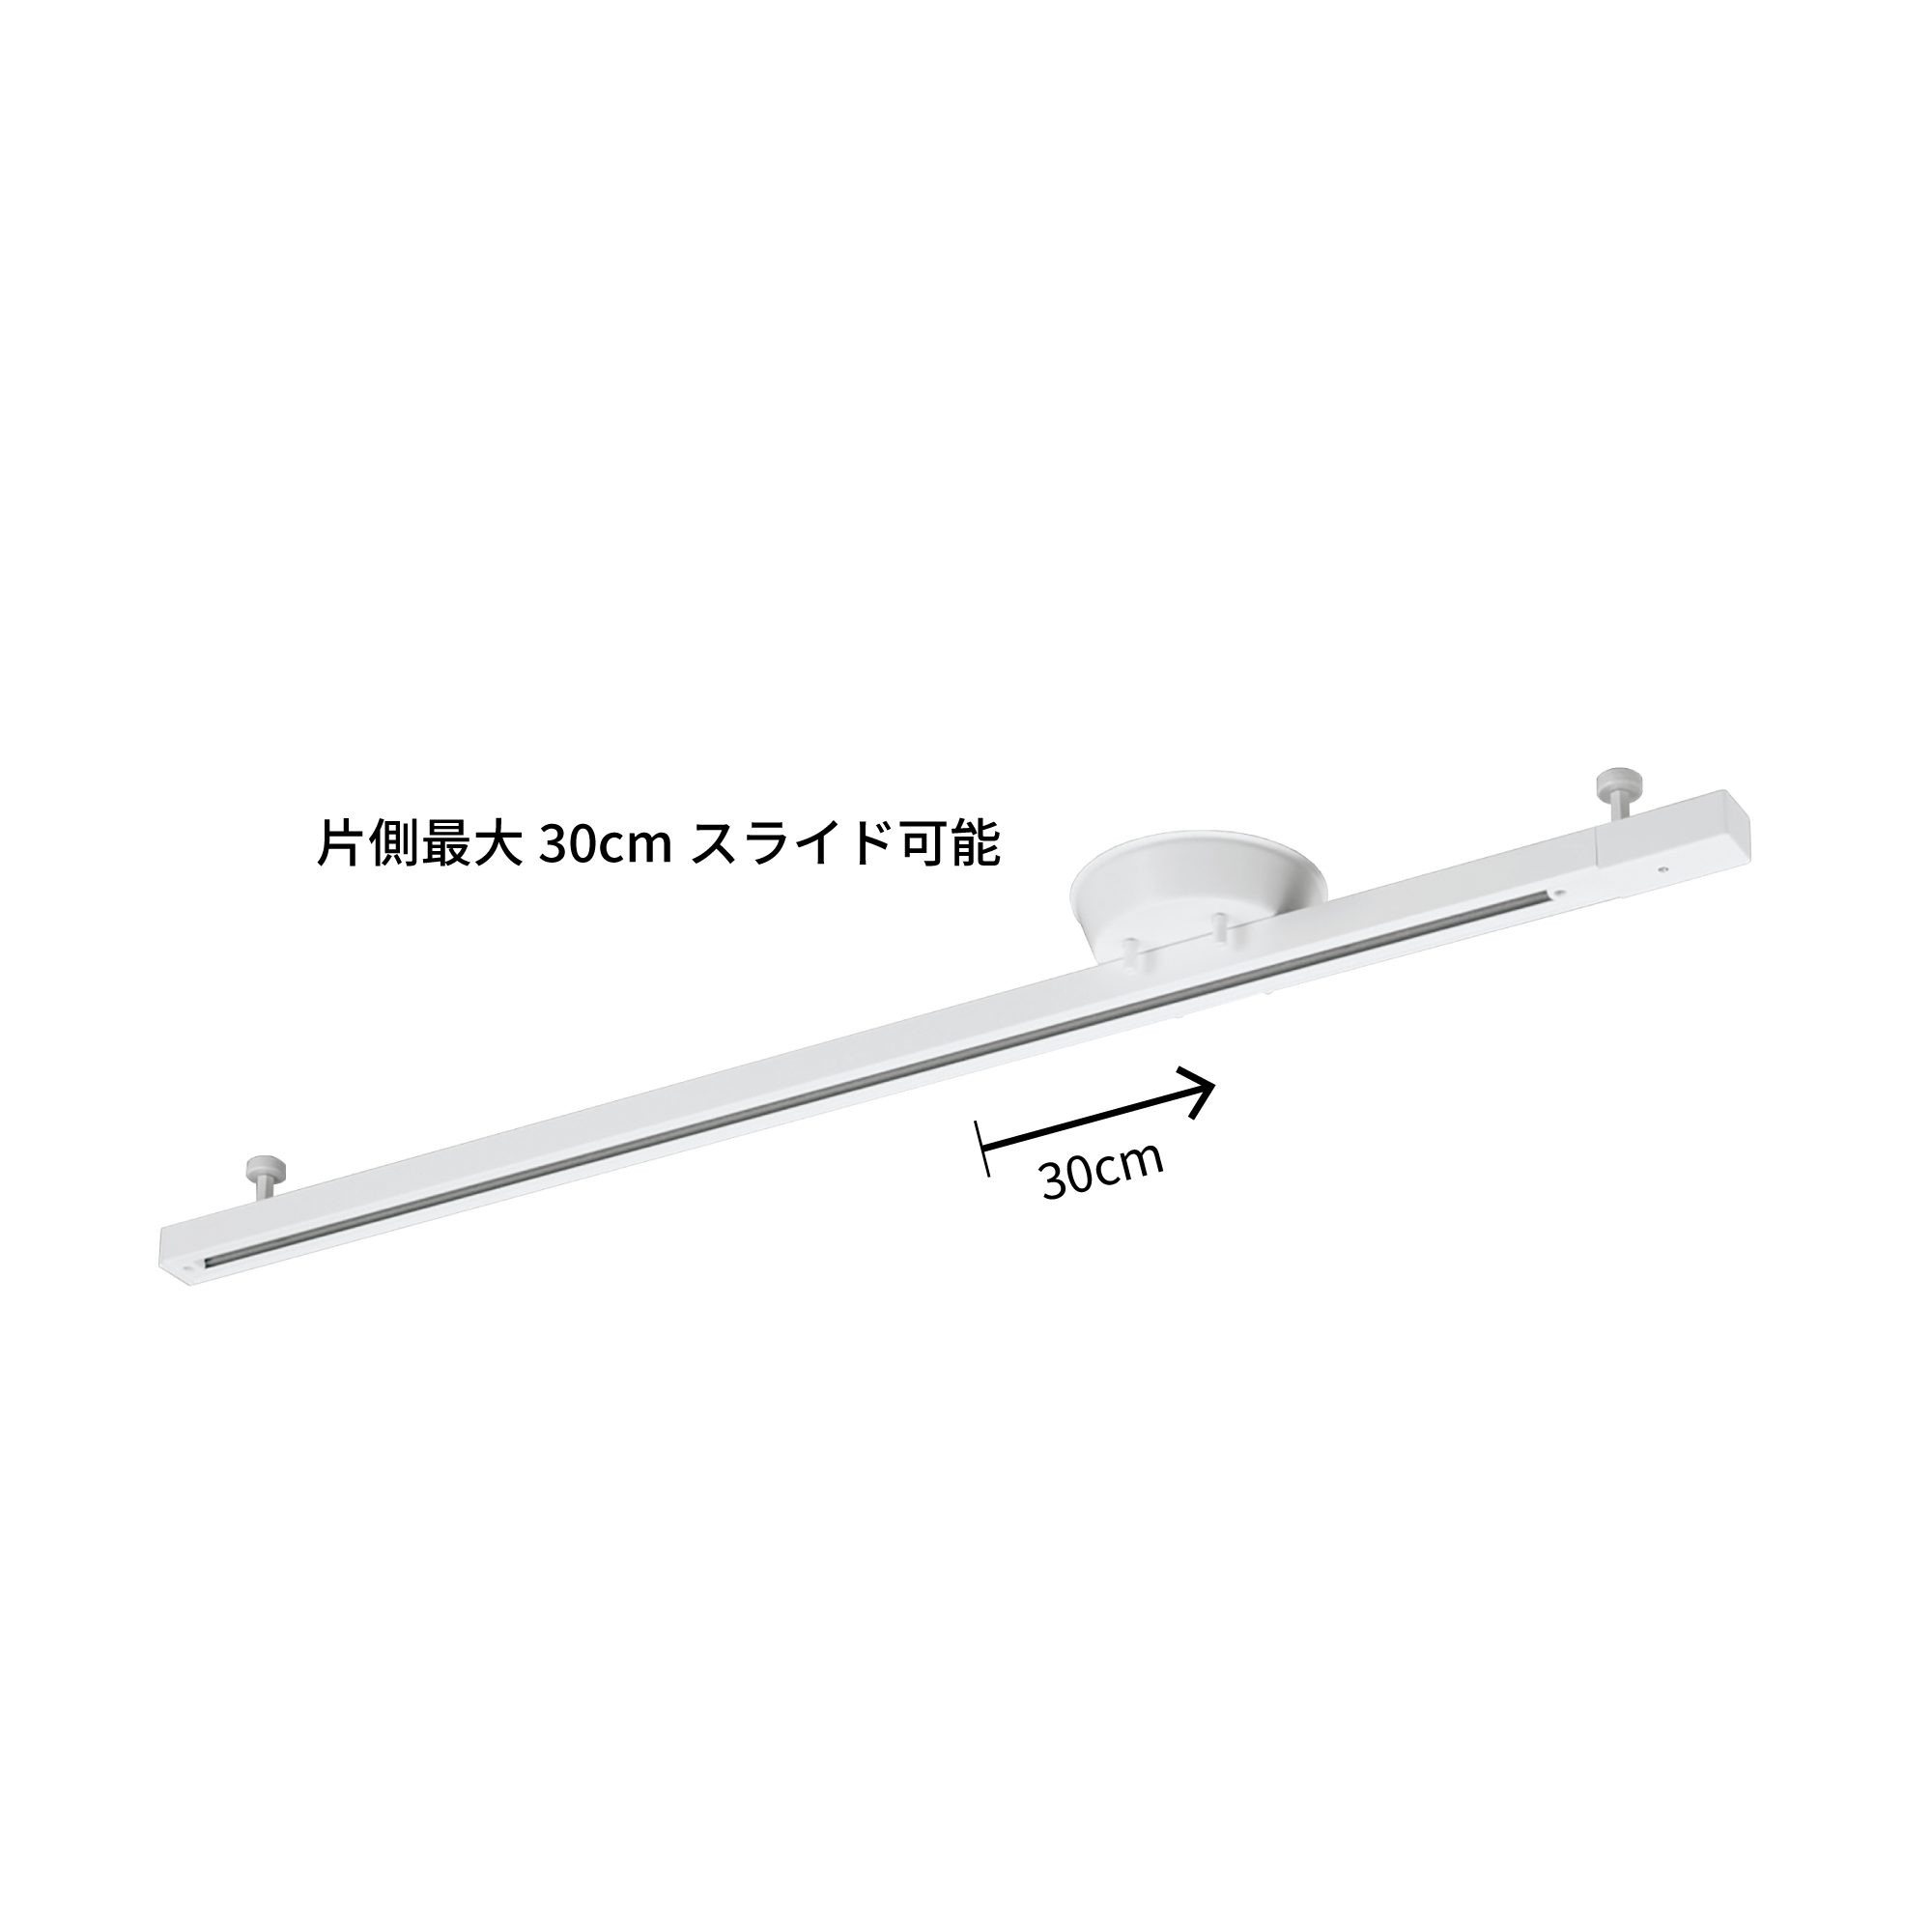 簡易取付式ライティングレール ホワイト1.6m | LT-PS004-02-G141